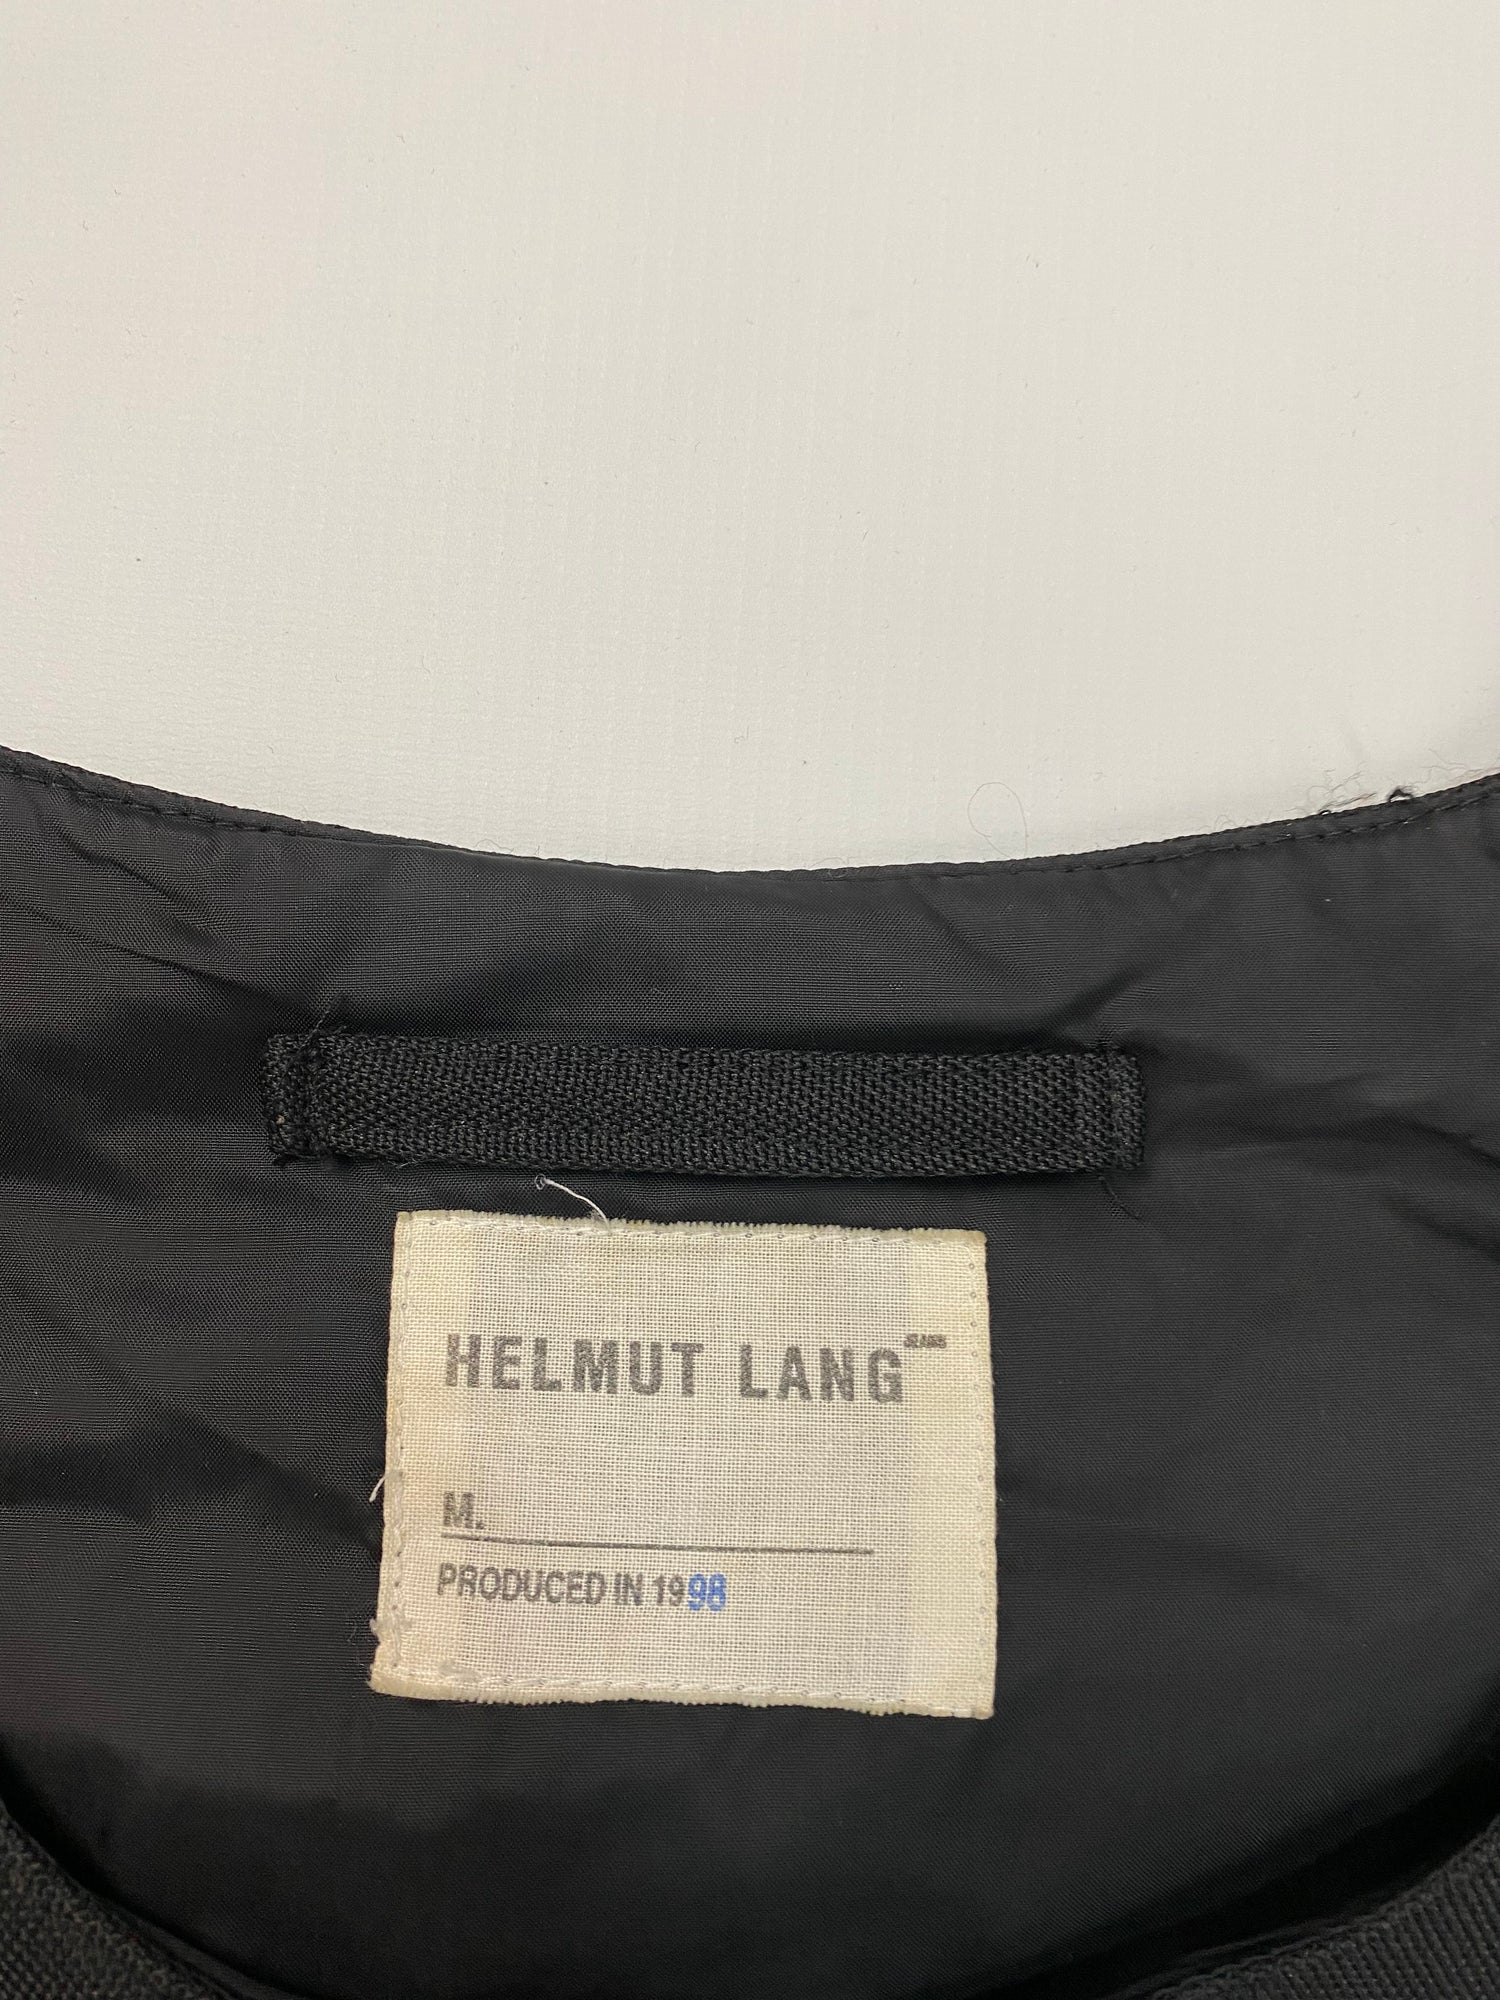 Helmut Lang Bulletproof Vest - SS99 - SILVER LEAGUE